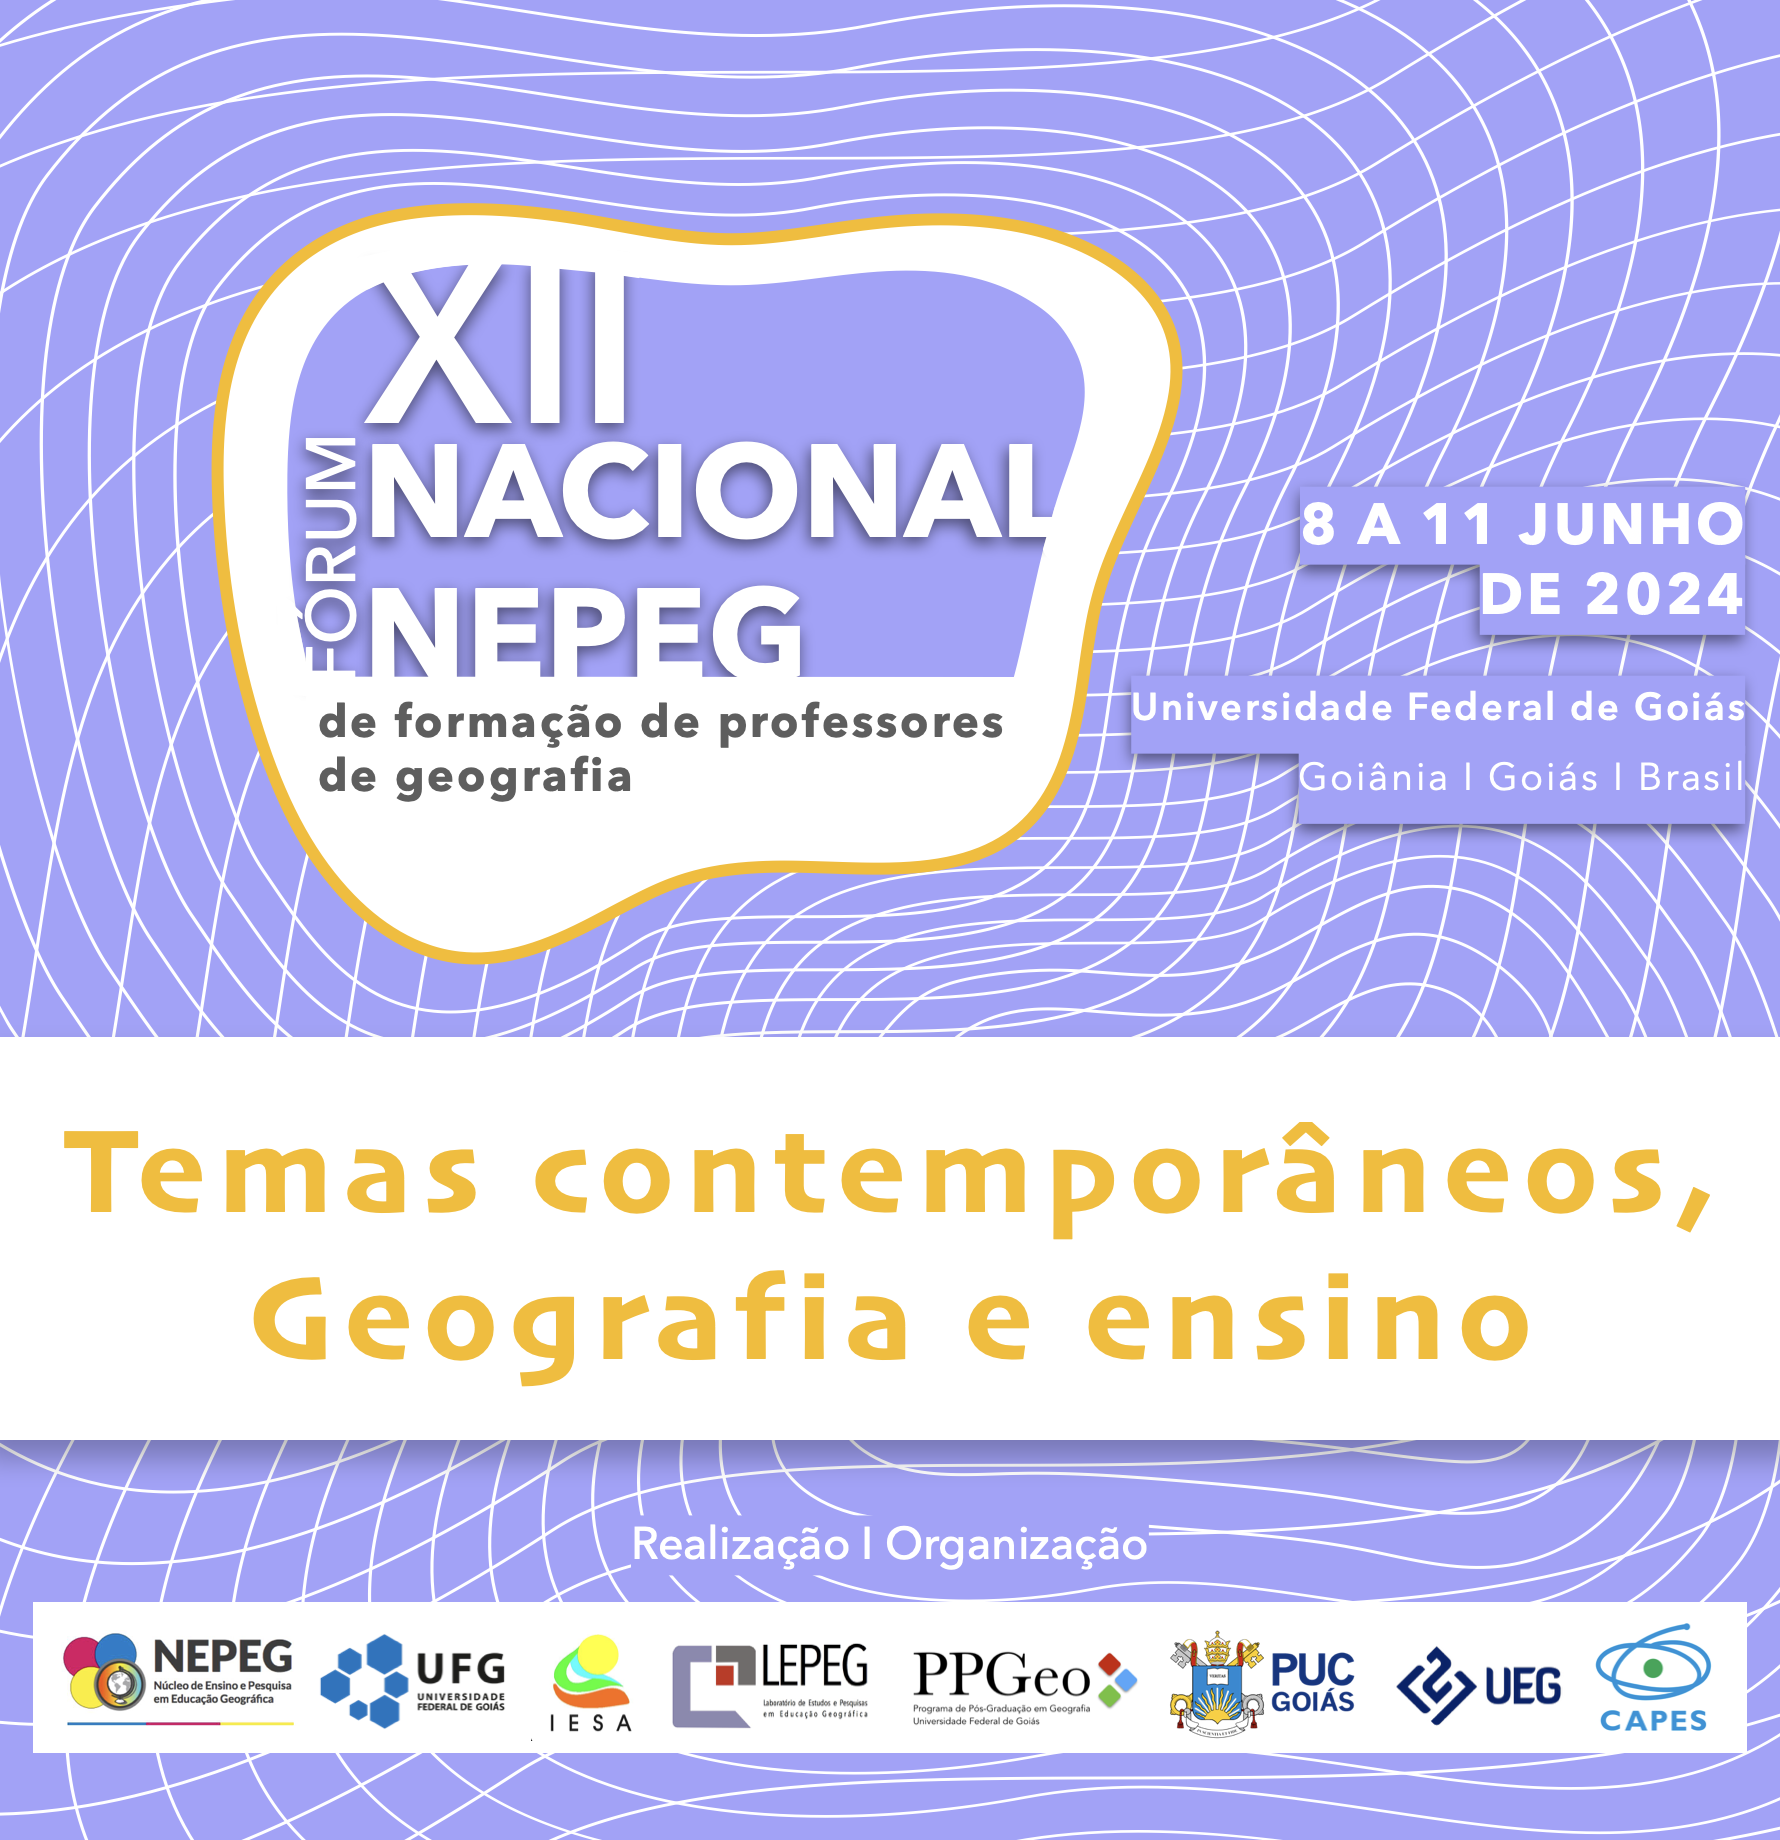 XII Fórum Nacional NEPEG de Formação de Professores de Geografia